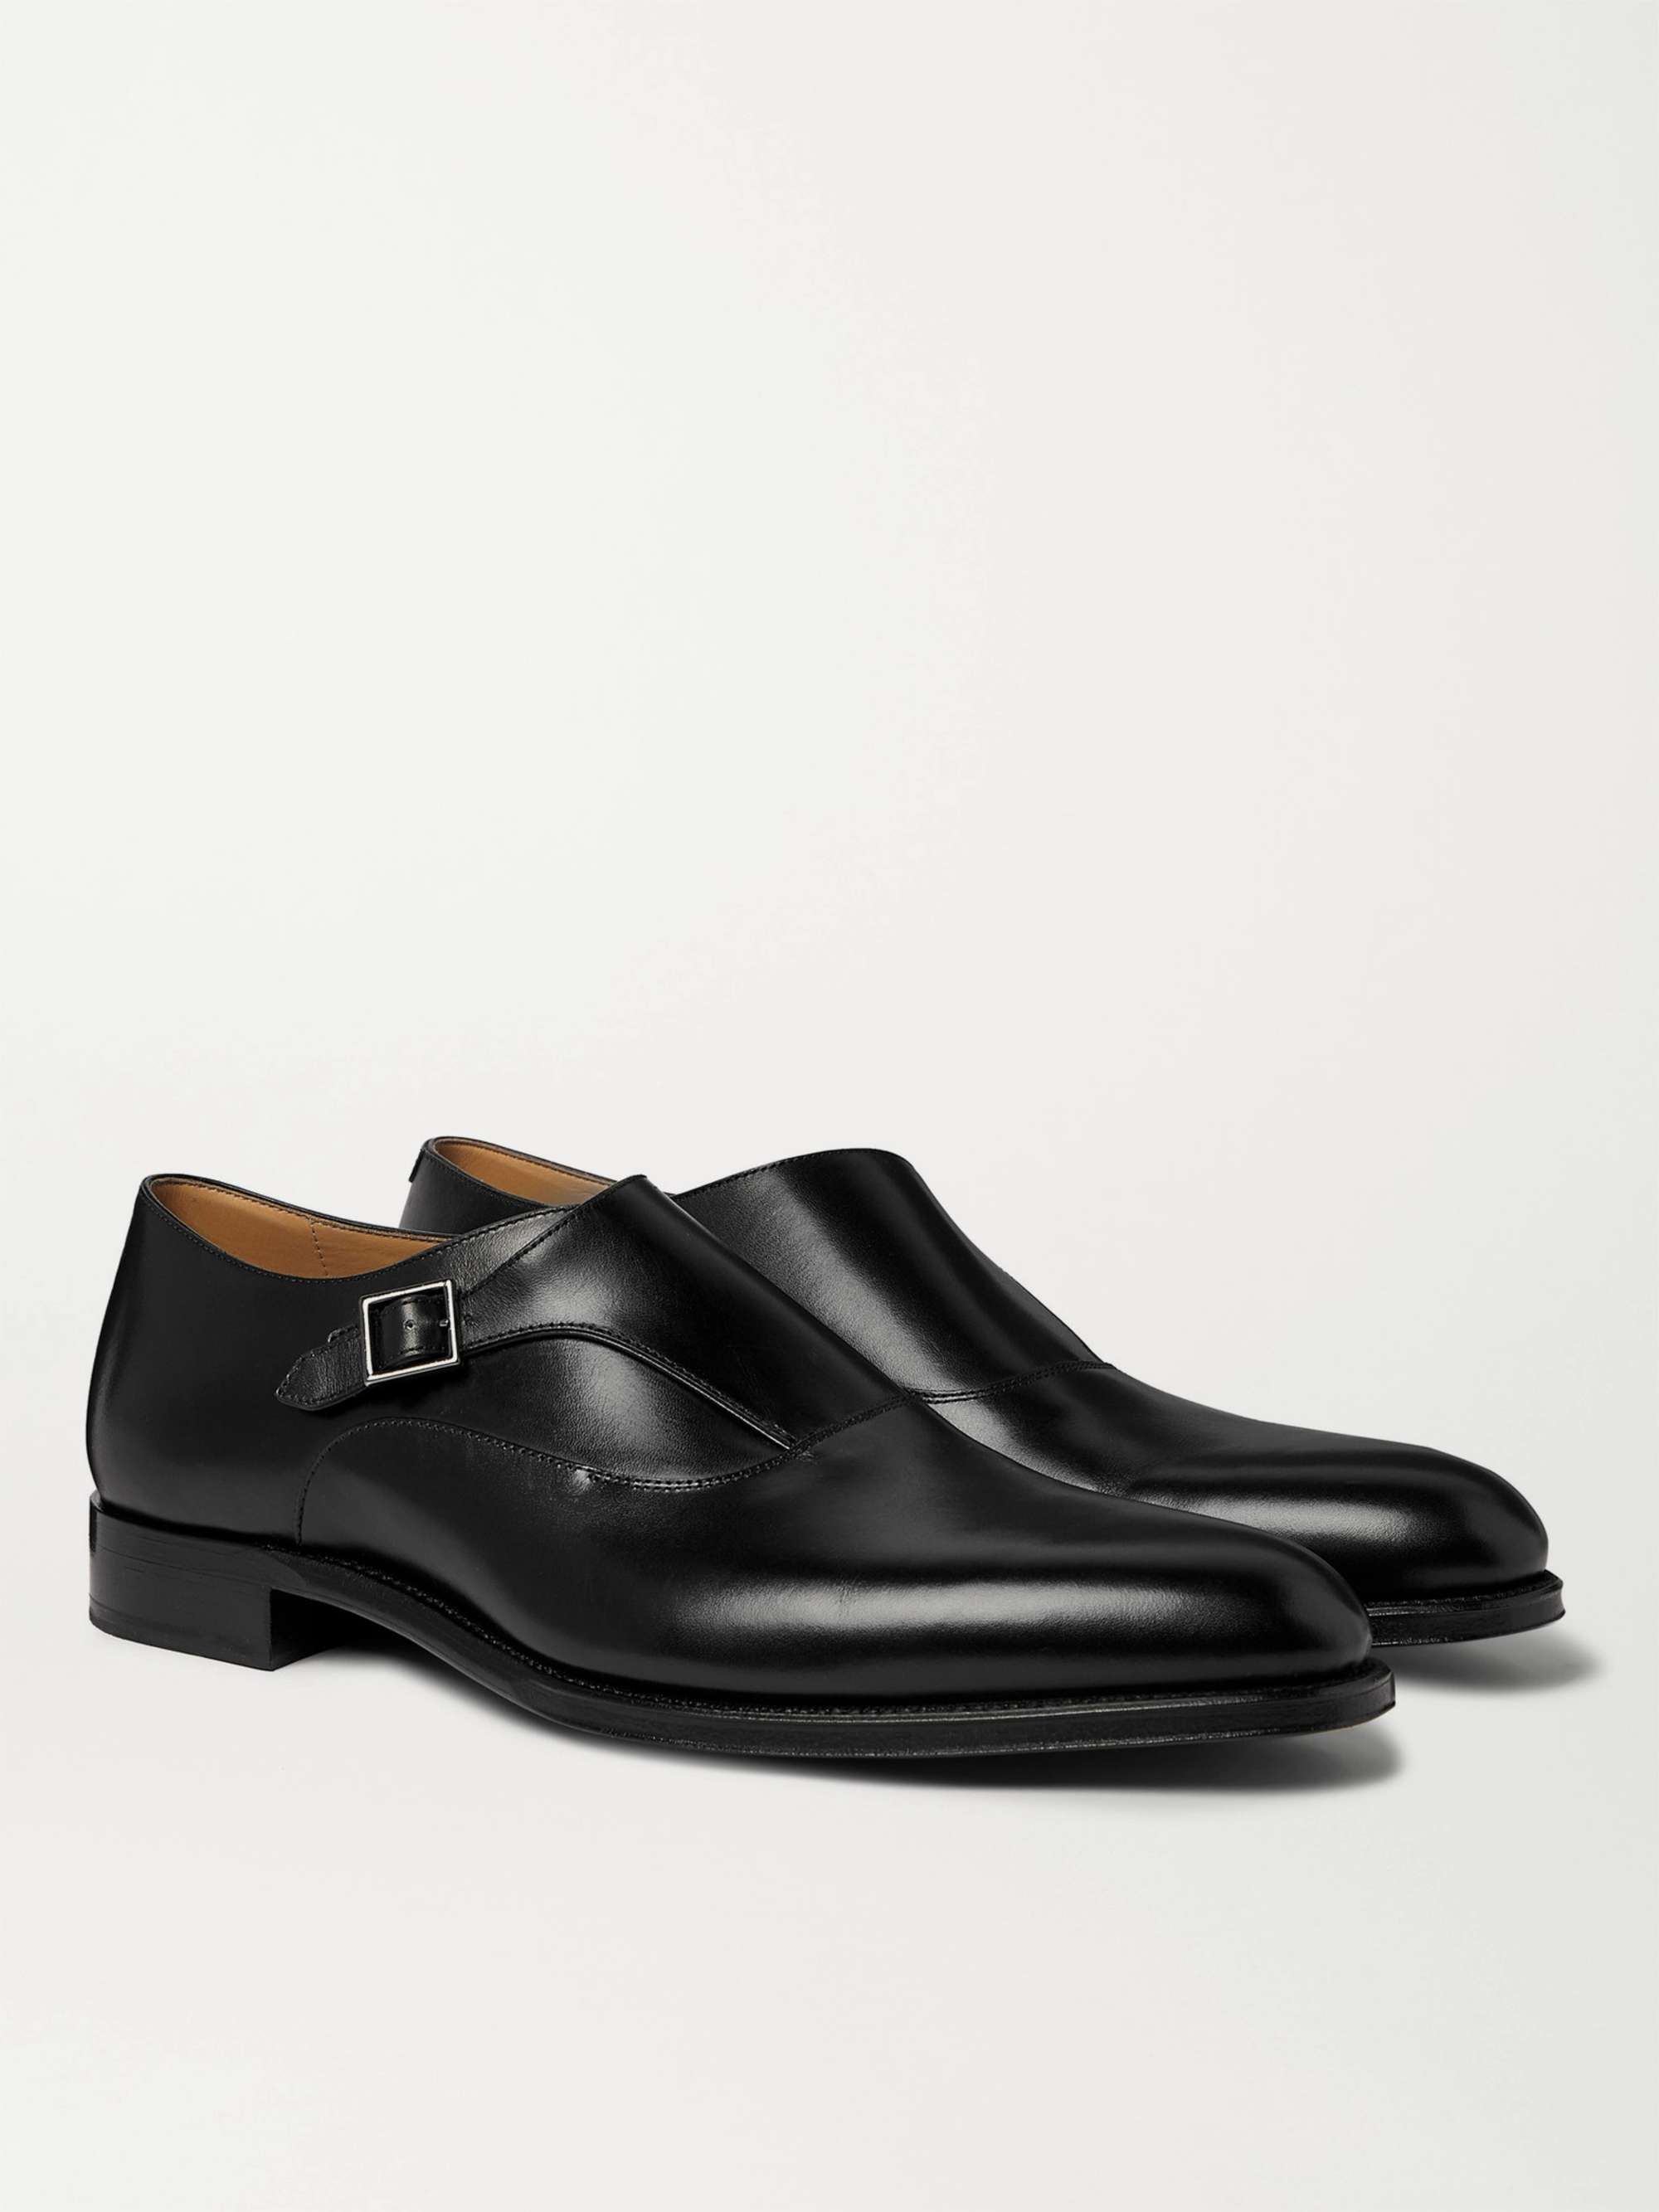 DUNHILL Kensington Leather Monk-Strap Shoes